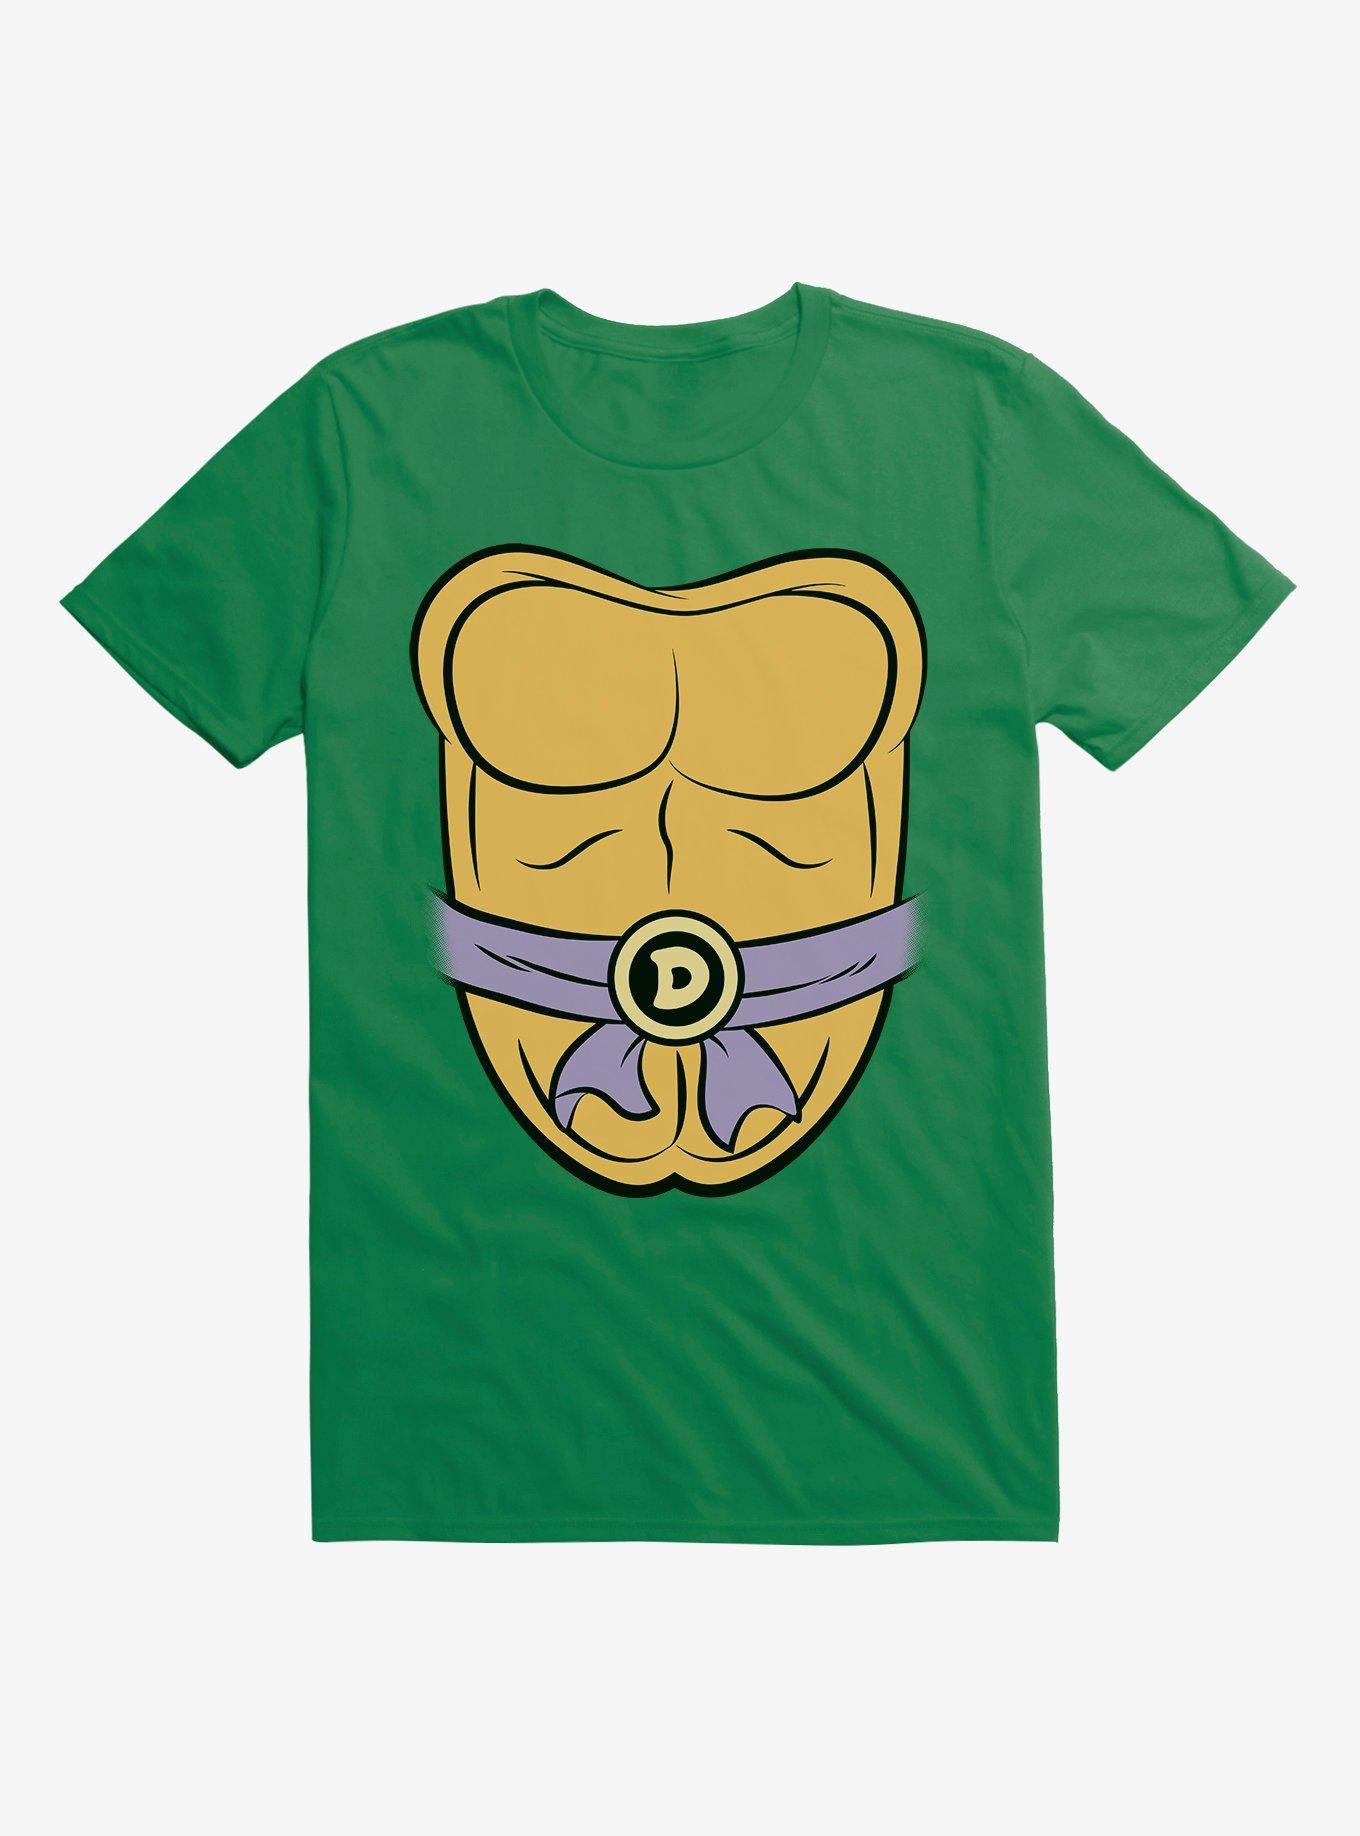 Teenage Mutant Ninja Turtles Donatello Cosplay T-Shirt